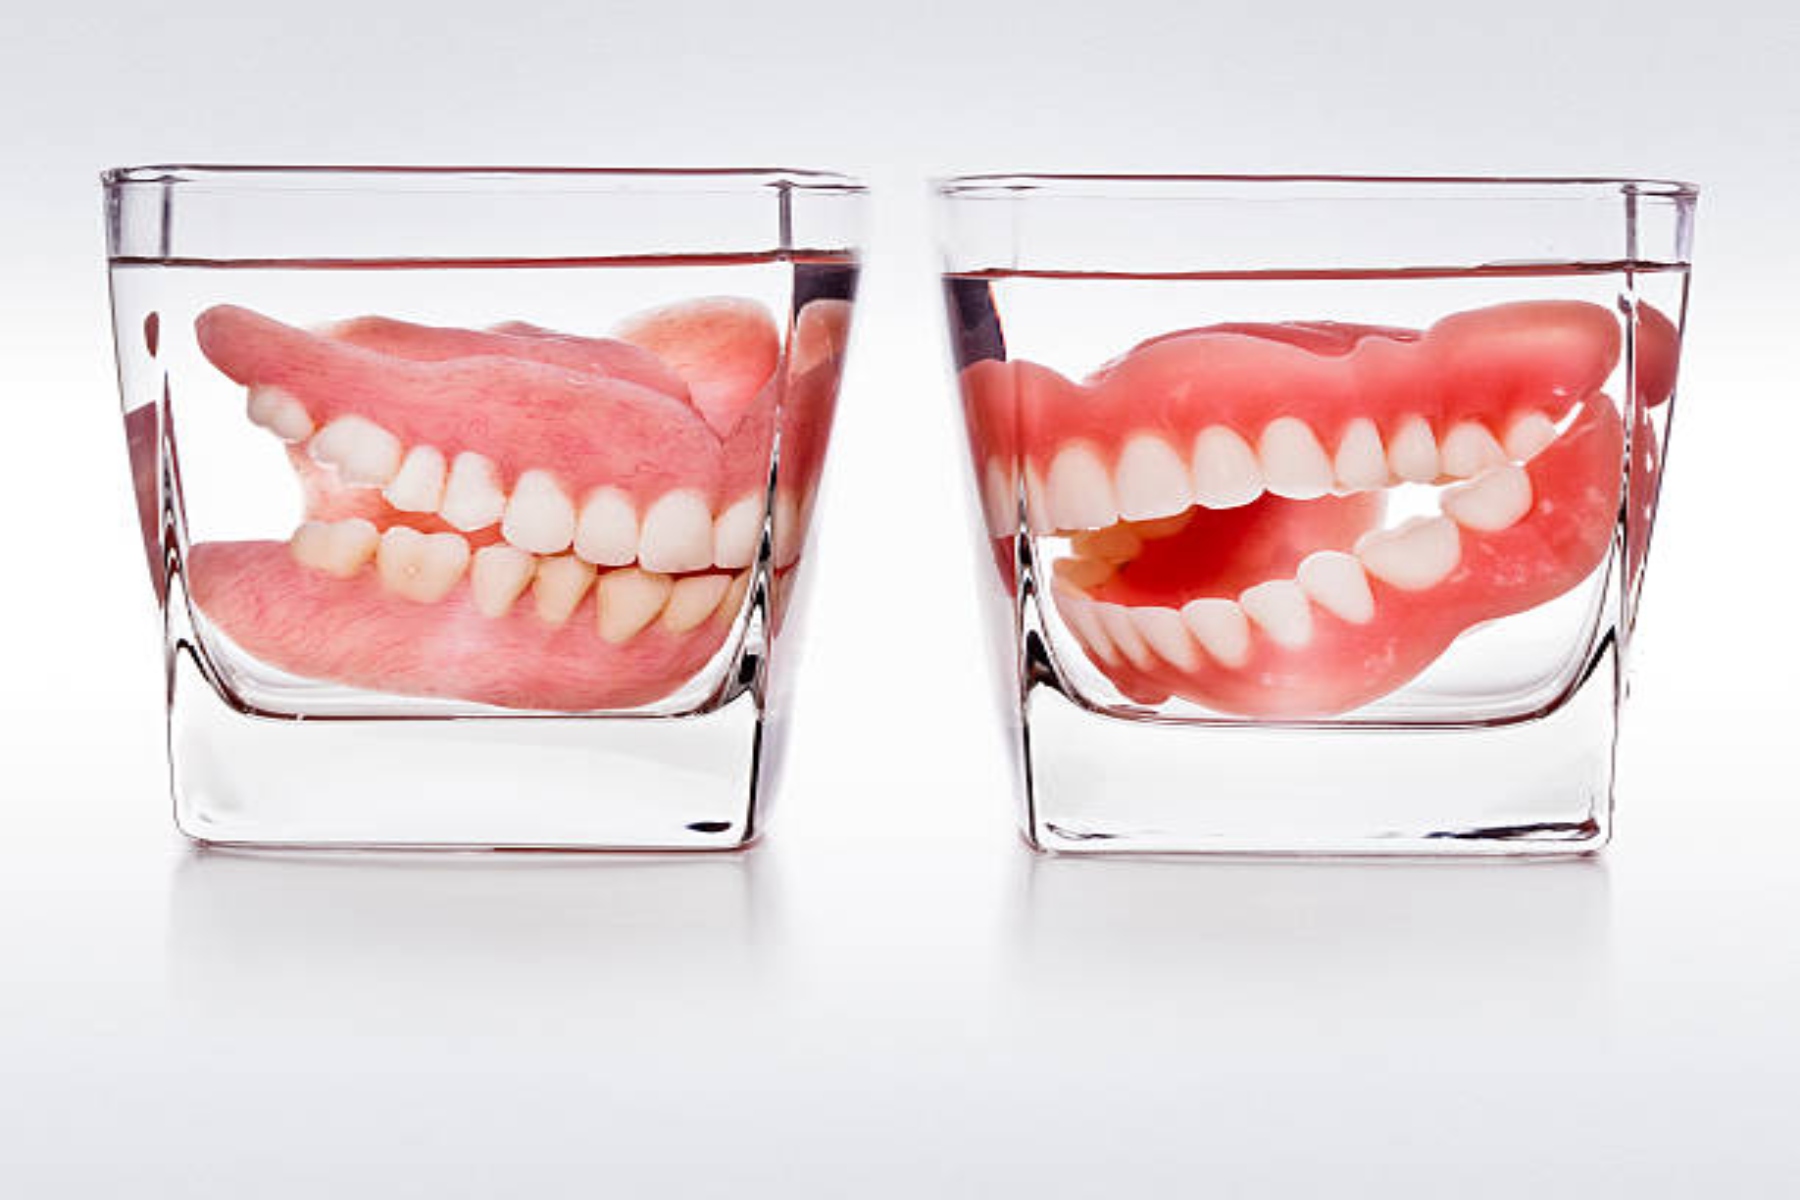 Δόντια ασθένεια: Ποια προβλήματα υγείας μπορεί να σας οδηγήσουν σε απώλεια δοντιών;